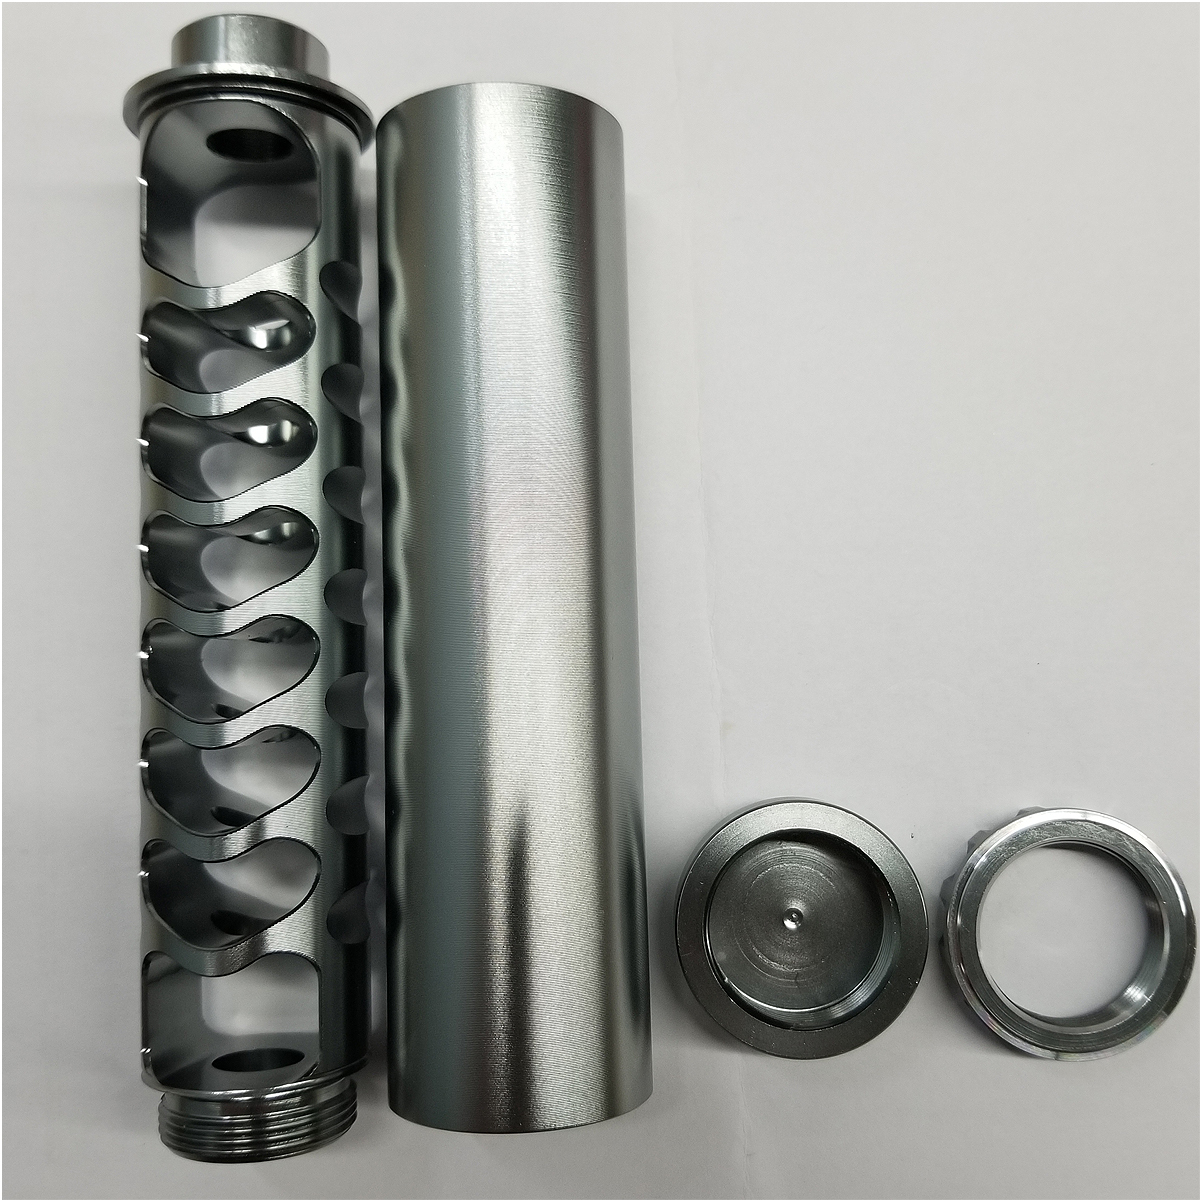 

6 '' Titanium Спираль 1 / 2-28 Авто Топливный фильтр Одноядерный сплав для NaPa 4003 WIX 24003